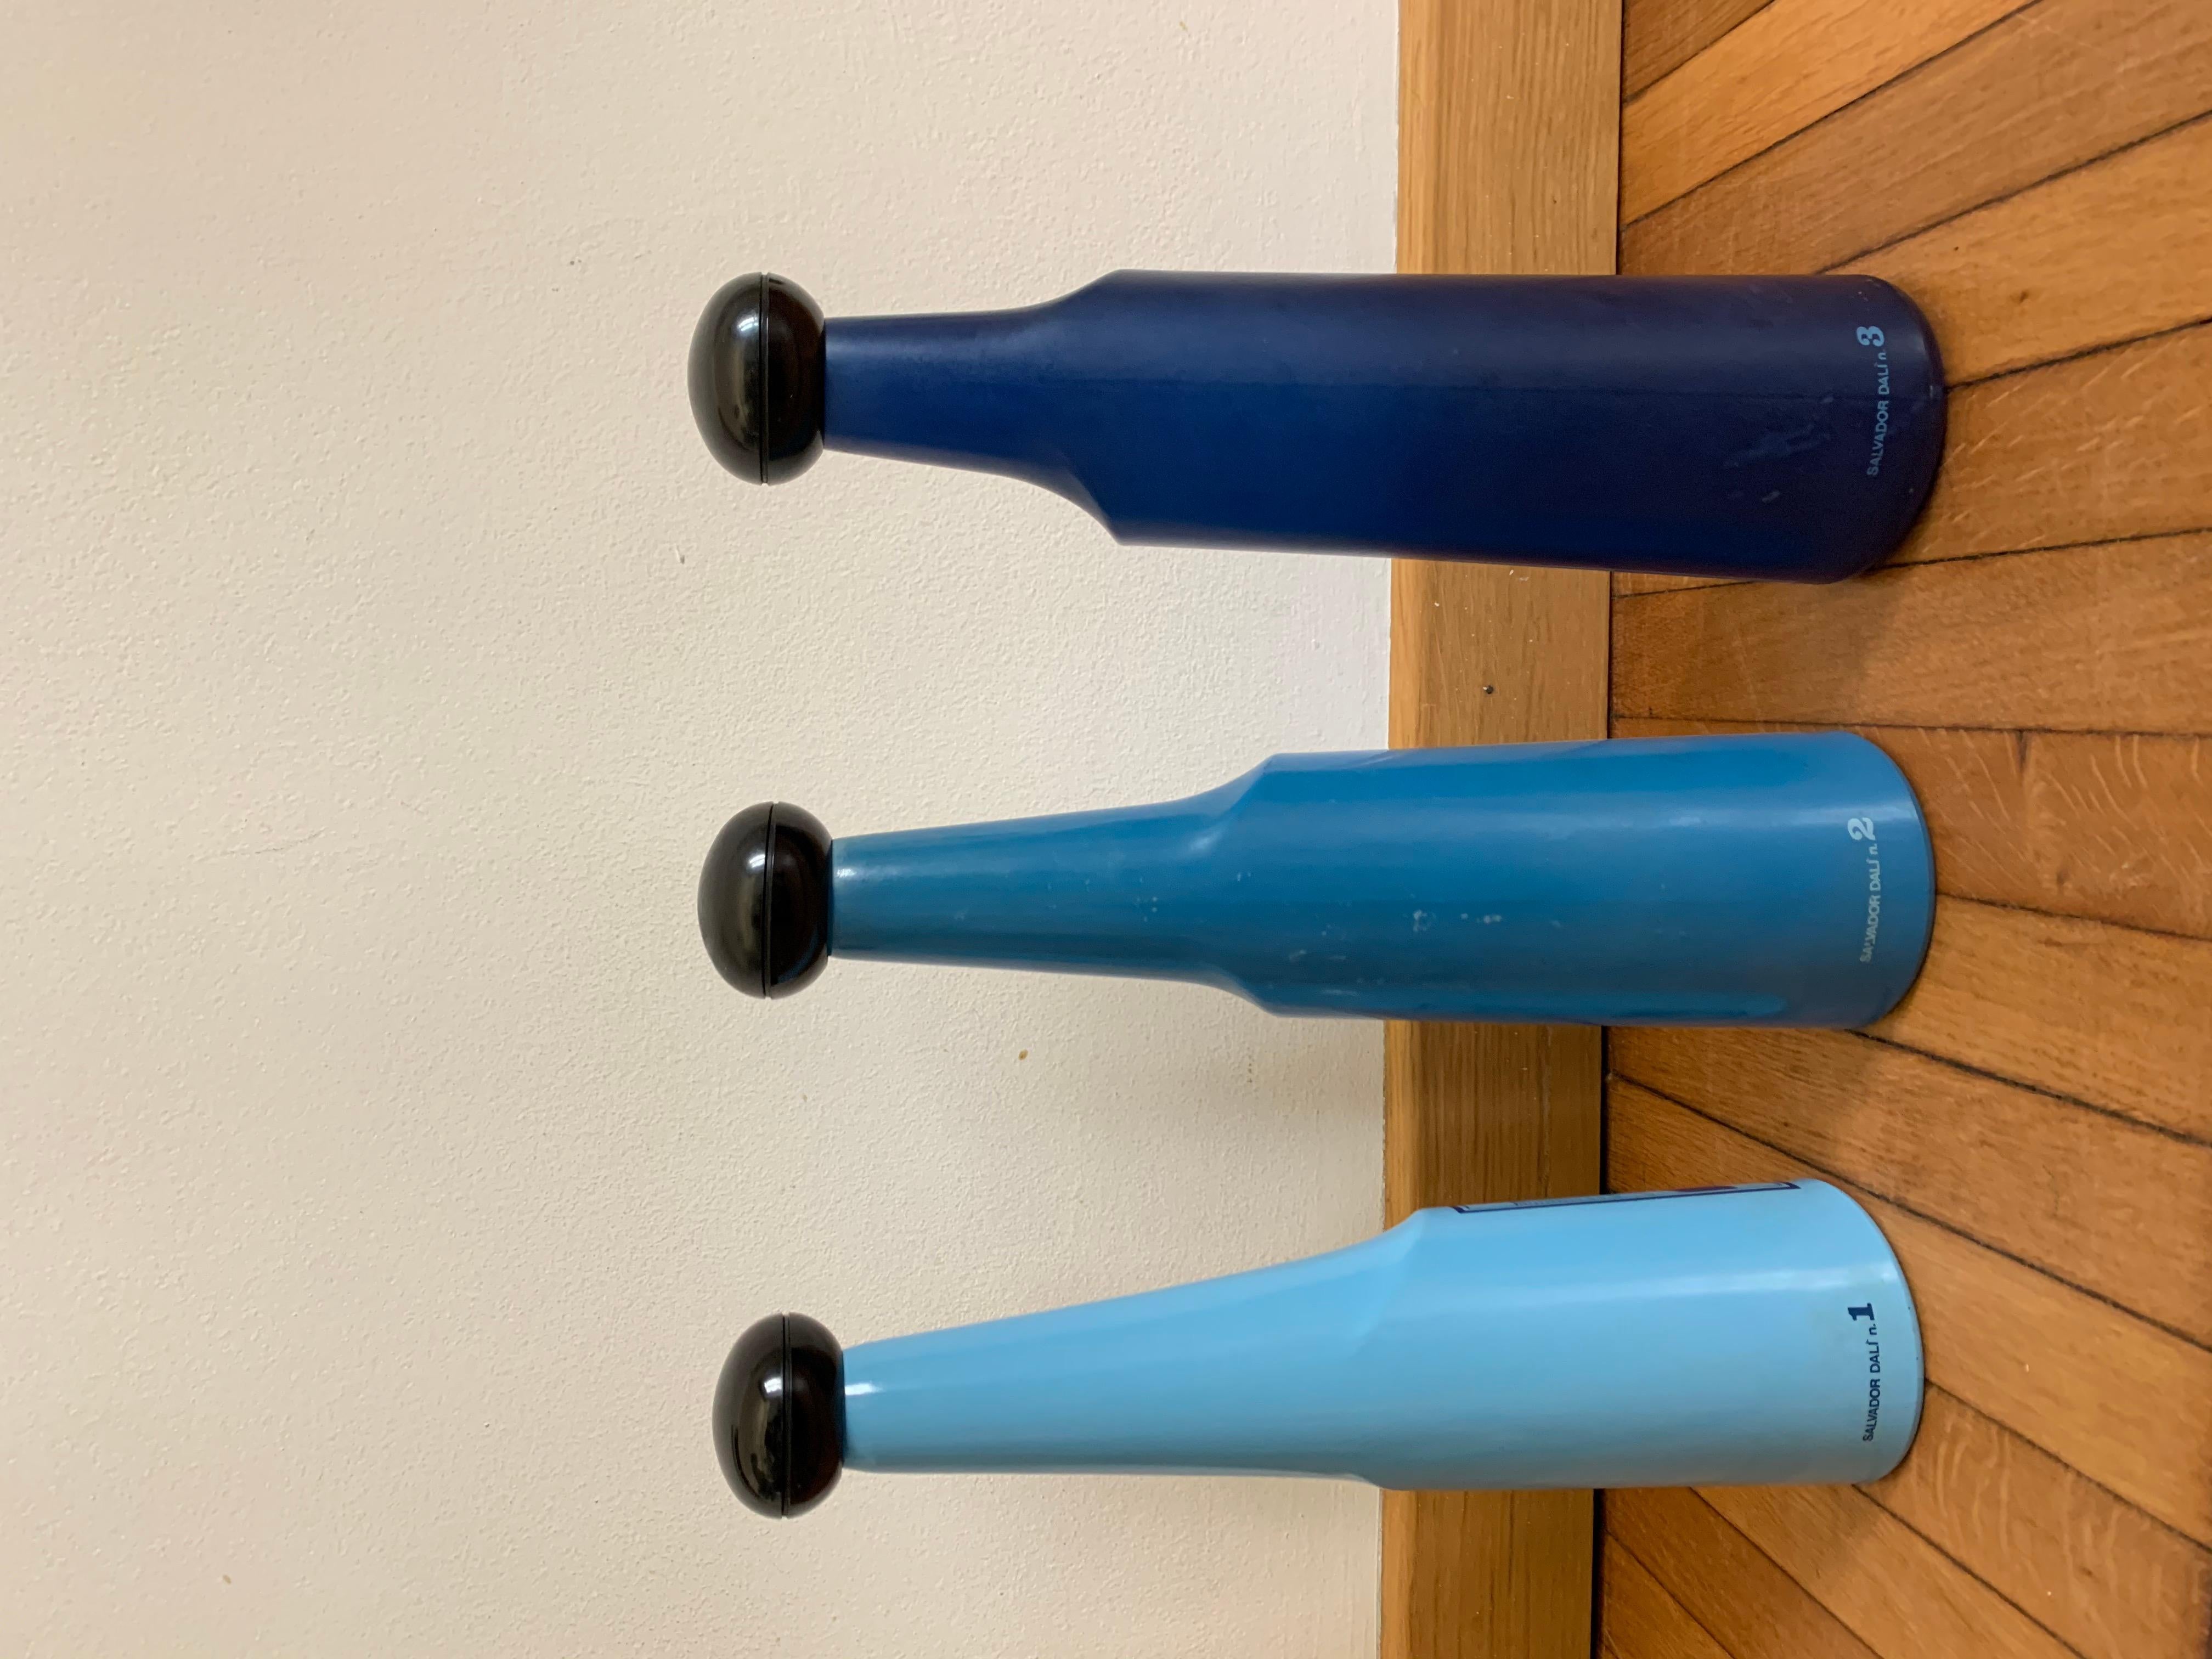 Vintage Rosso Antico Satz von 3 farbigen Glasflaschen: Surrealist Design Italienisch und Spanisch Kunst 1970er Jahre von Salvador Dali.
Jede Flasche ist mit einem anderen Siebdruckbild versehen, das der spanische Maler Salvador Dalí für die